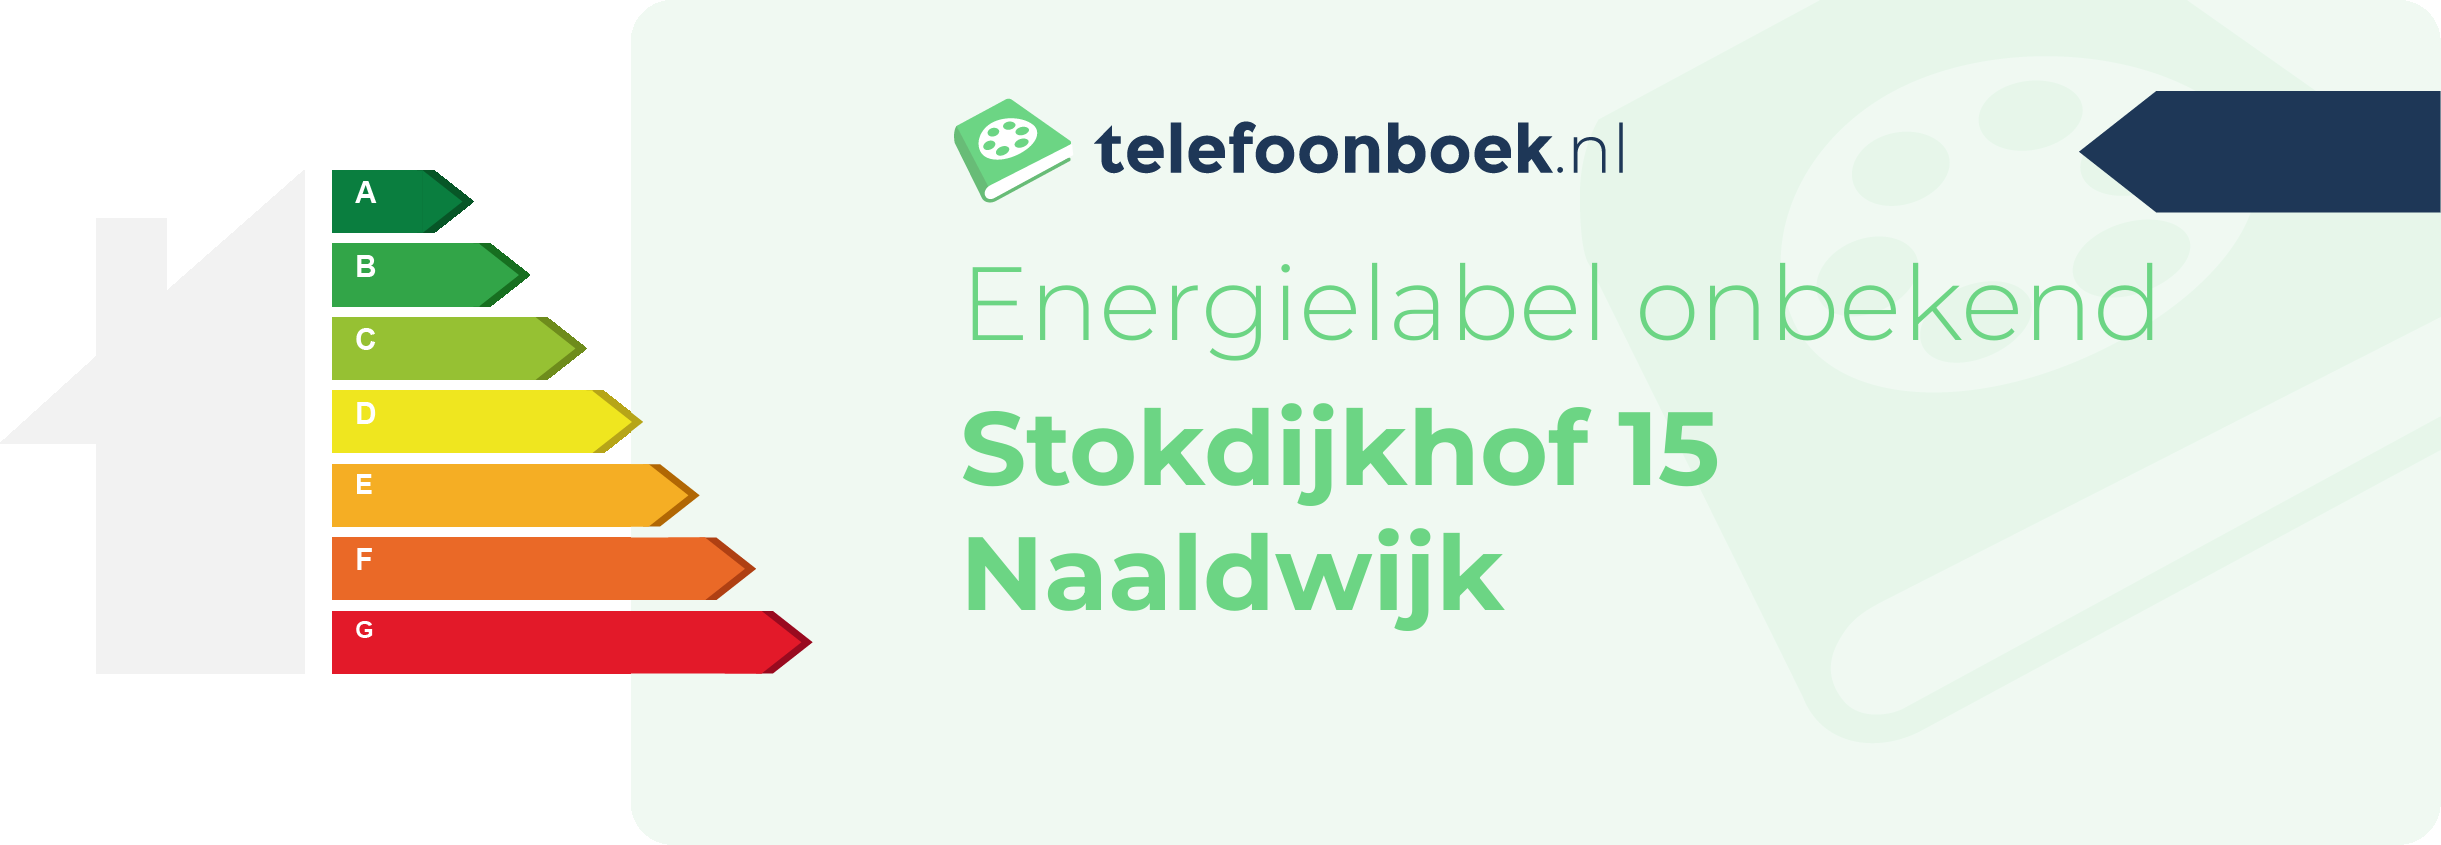 Energielabel Stokdijkhof 15 Naaldwijk